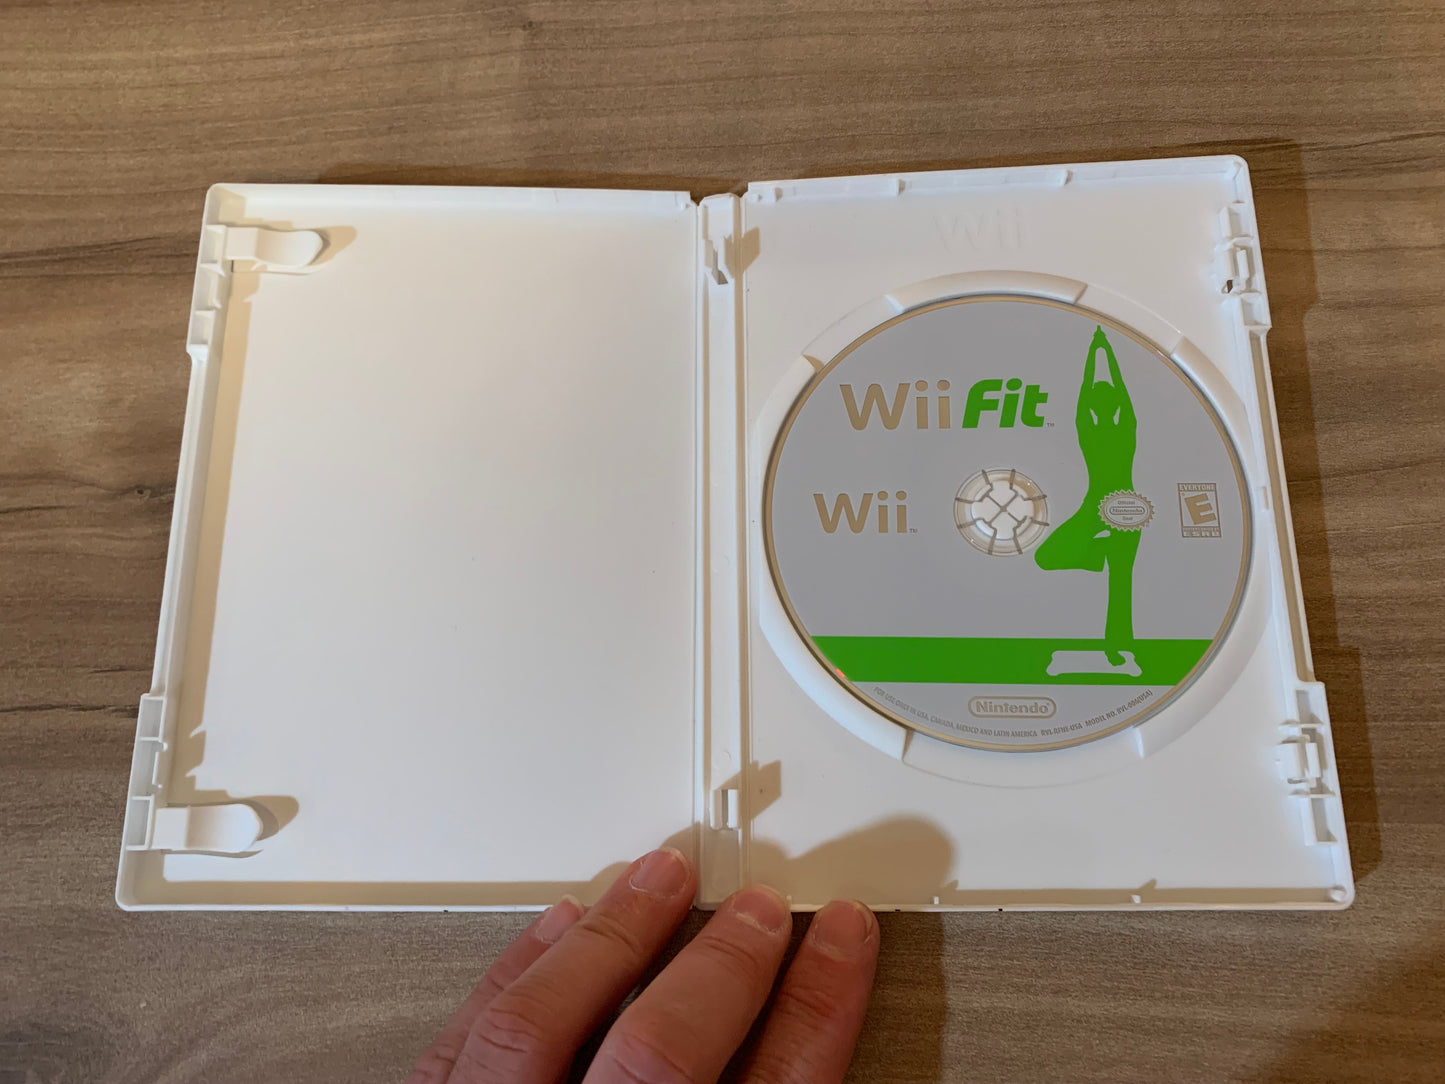 NiNTENDO Wii | WiiFiT